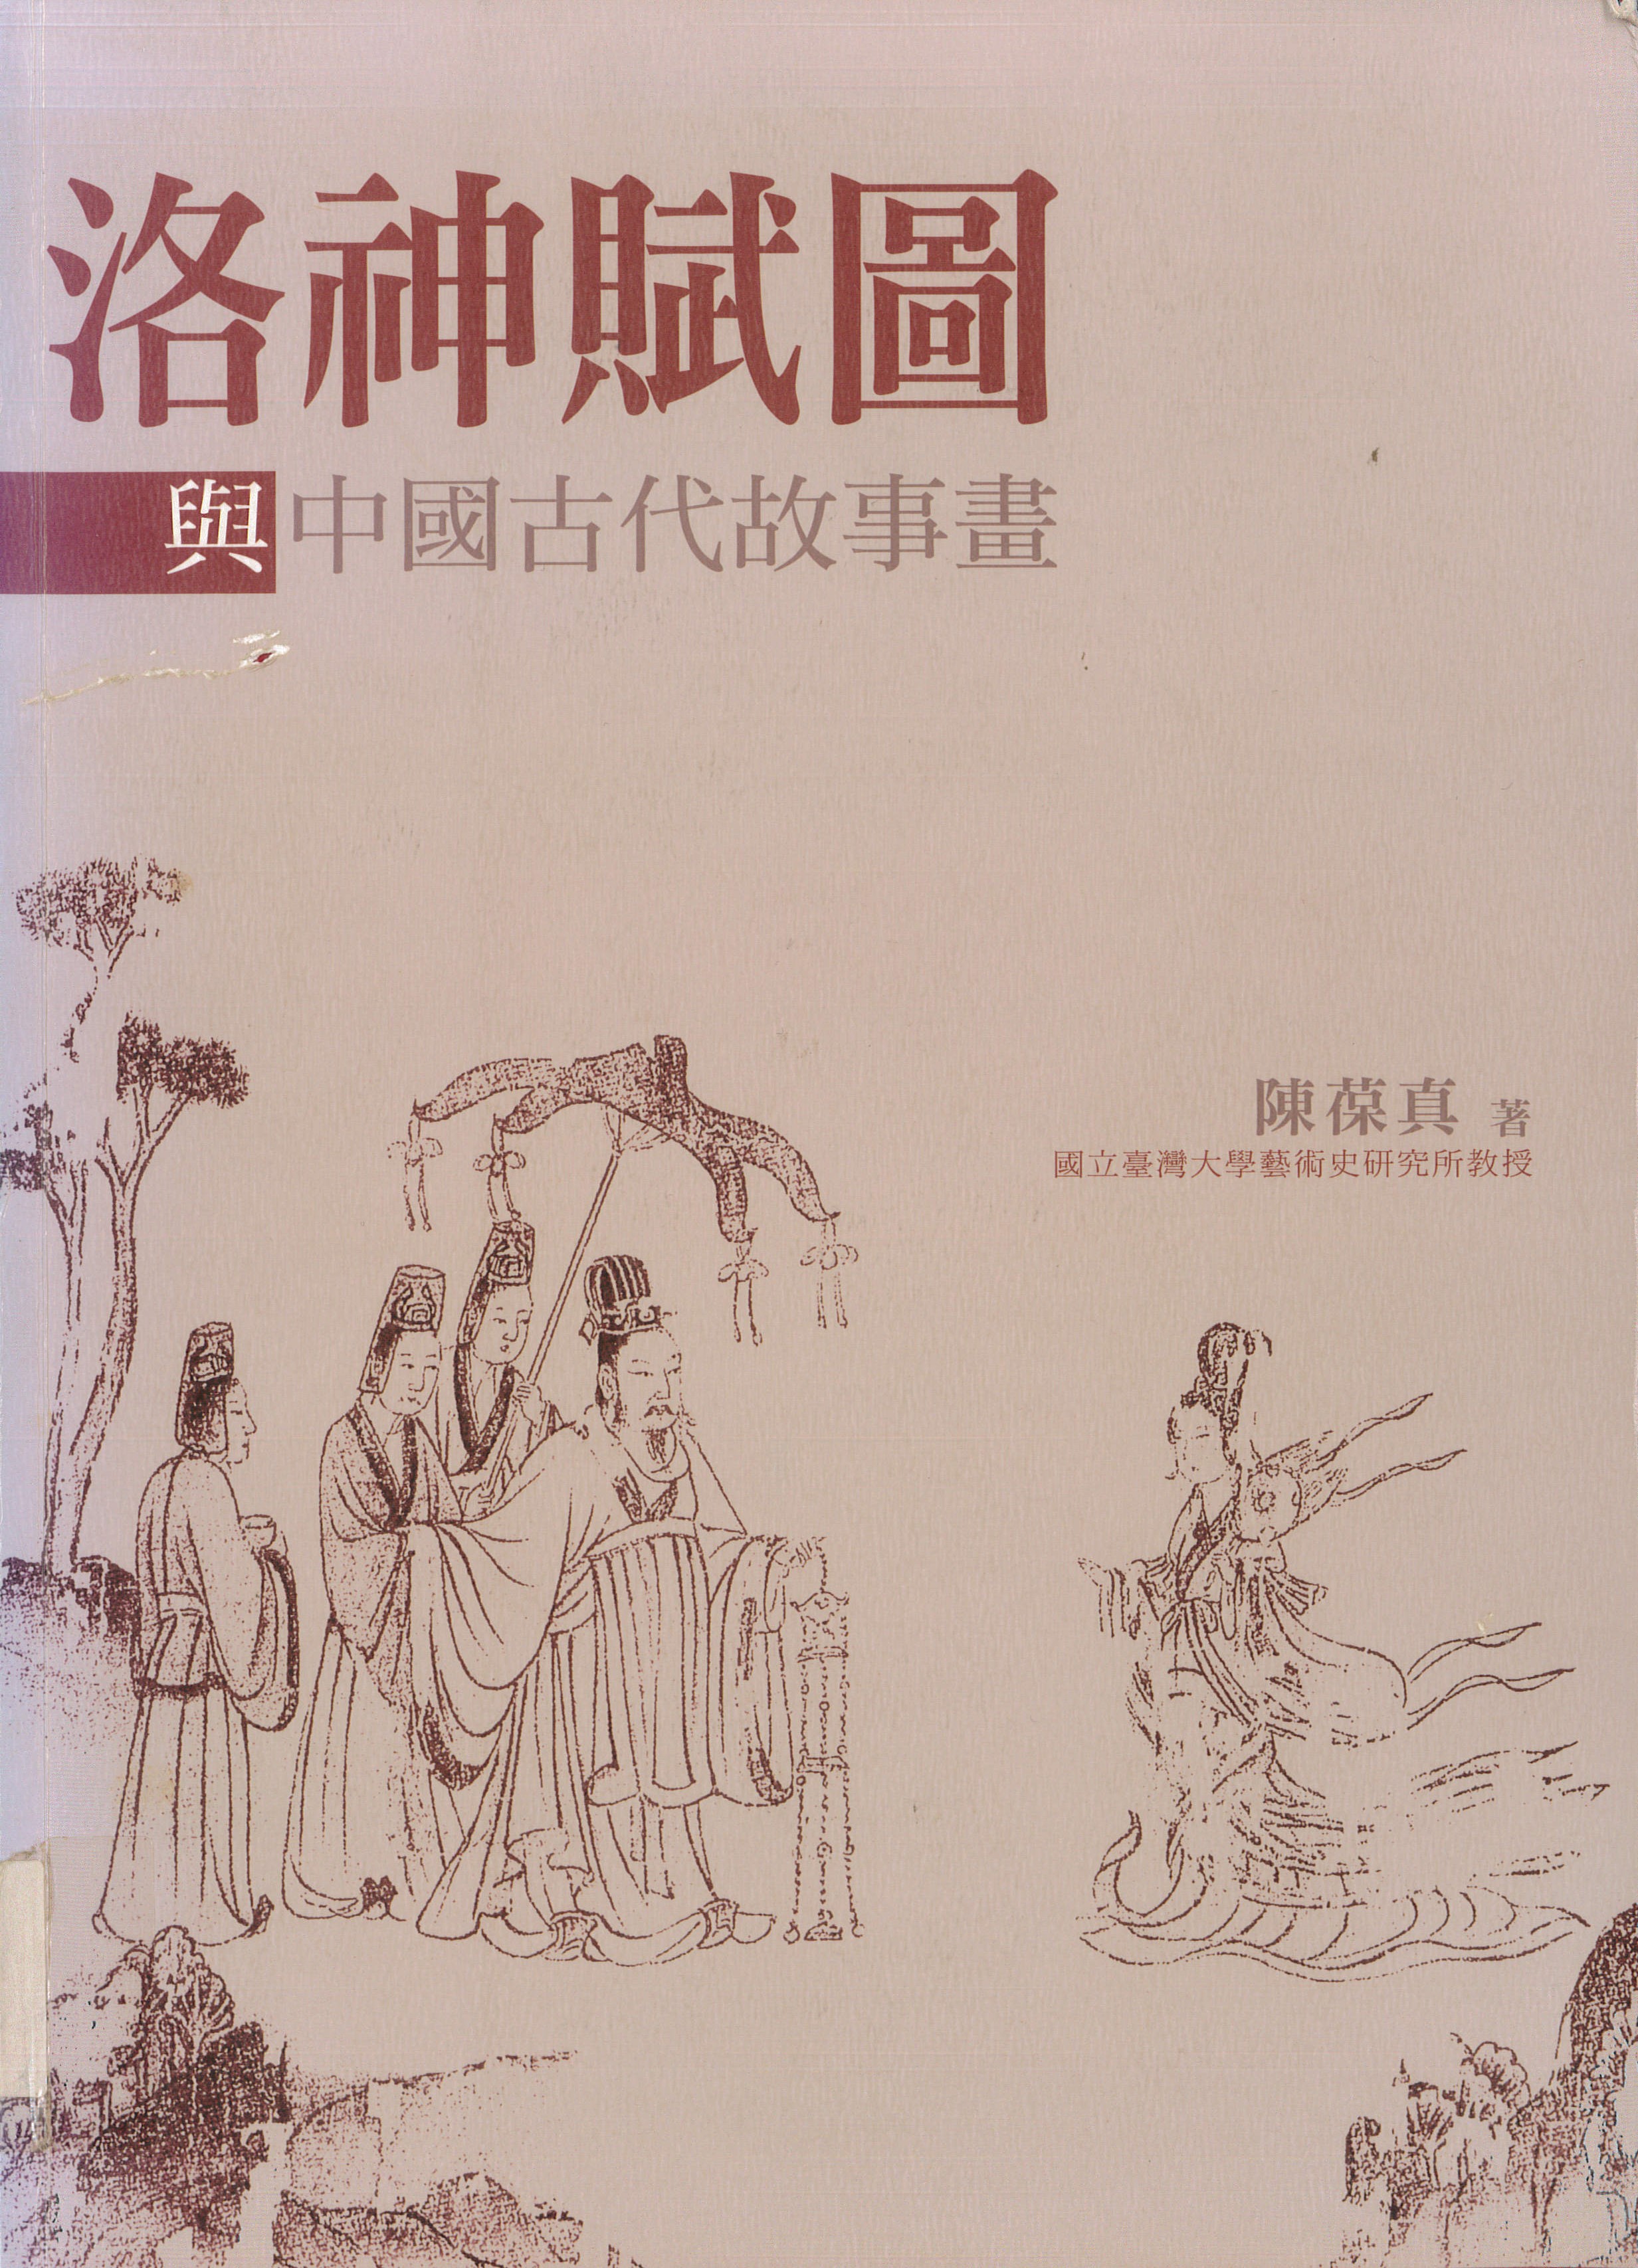 洛神賦圖與中國古代故事畫 書籍封面